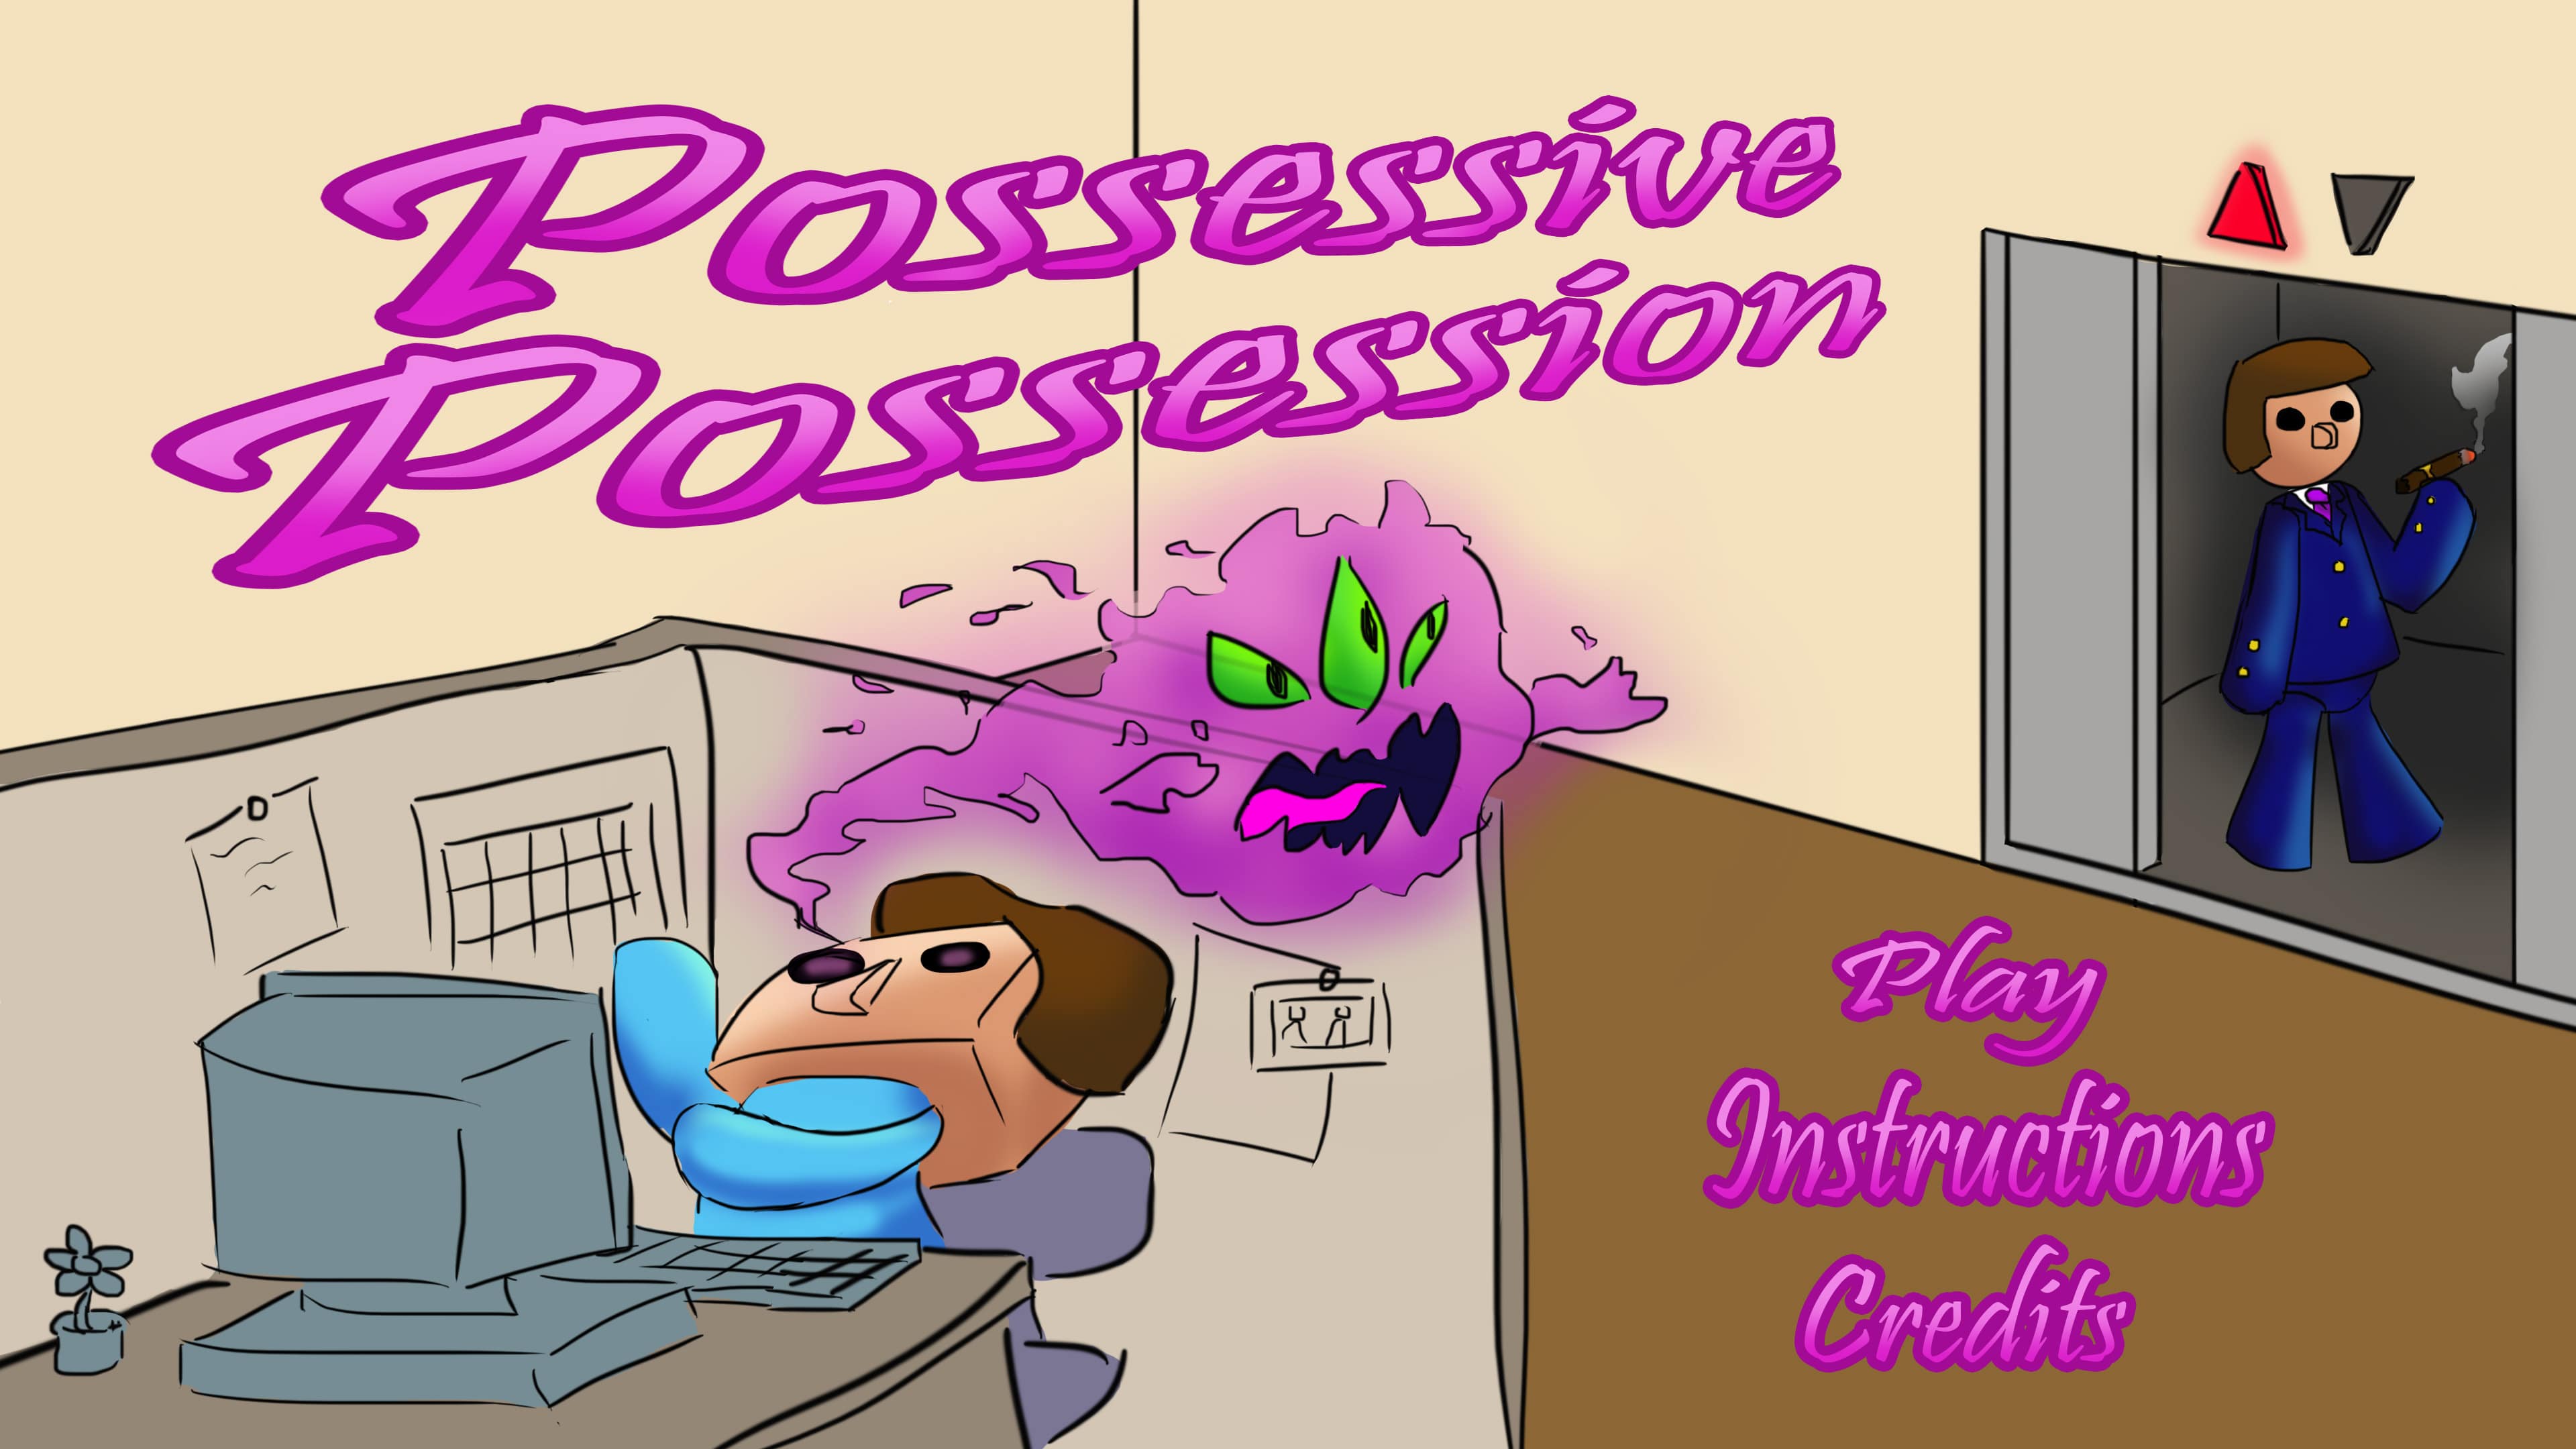 Download Possessive Possession!